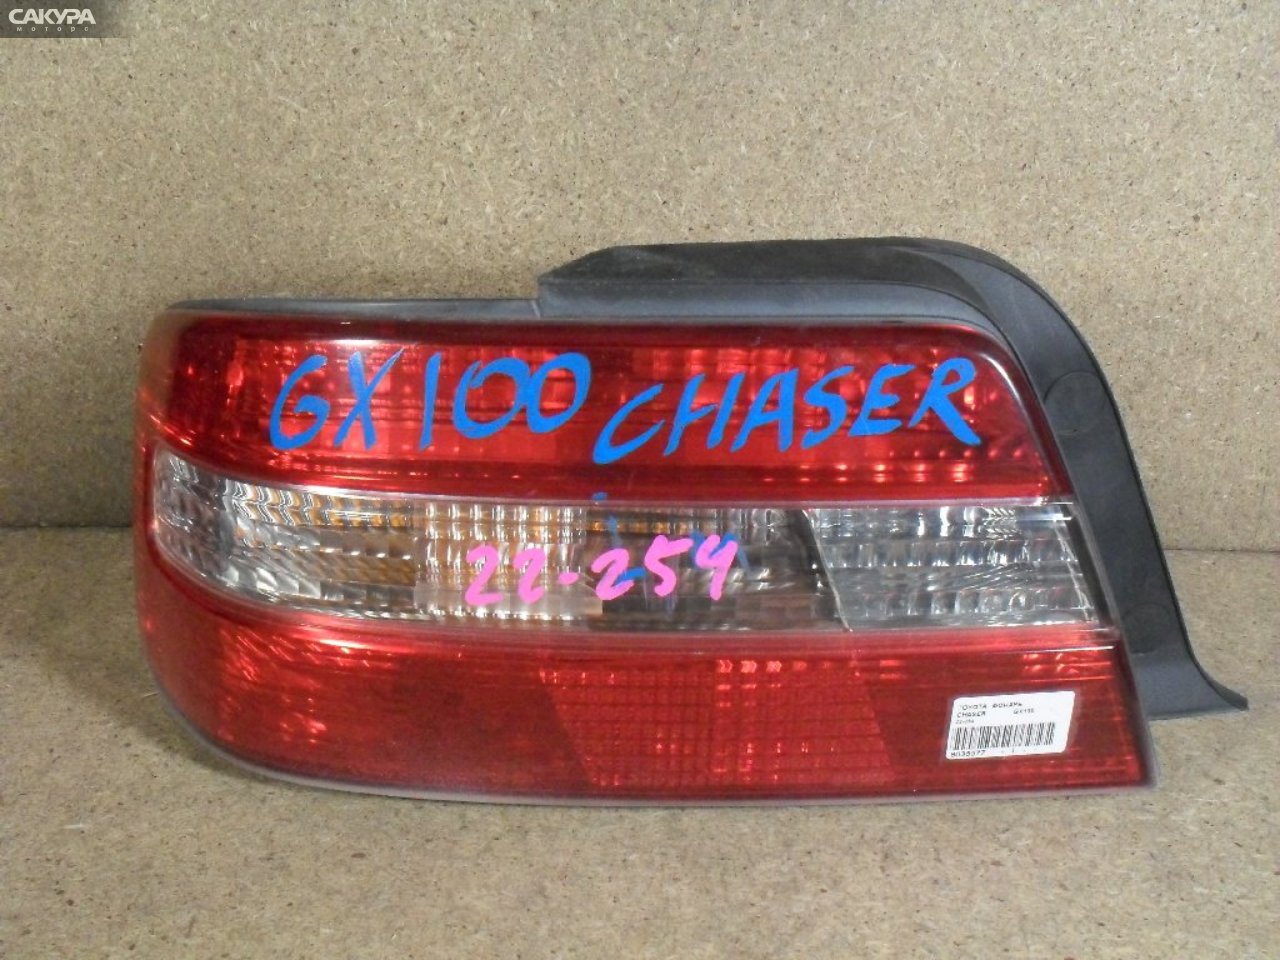 Фонарь стоп-сигнала левый Toyota Chaser GX100 22-254: купить в Сакура Абакан.